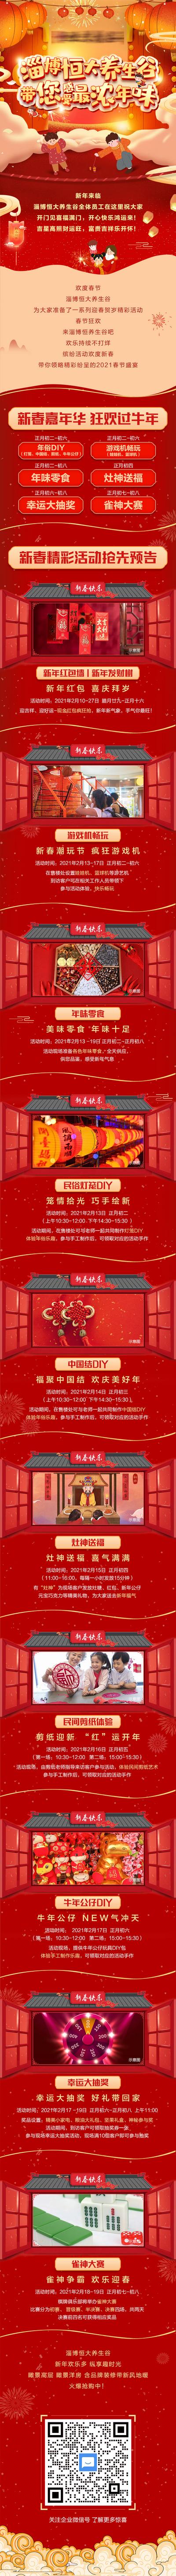 南门网 专题设计 长图 房地产 红包墙 新春 中国结 宫灯 暖场活动